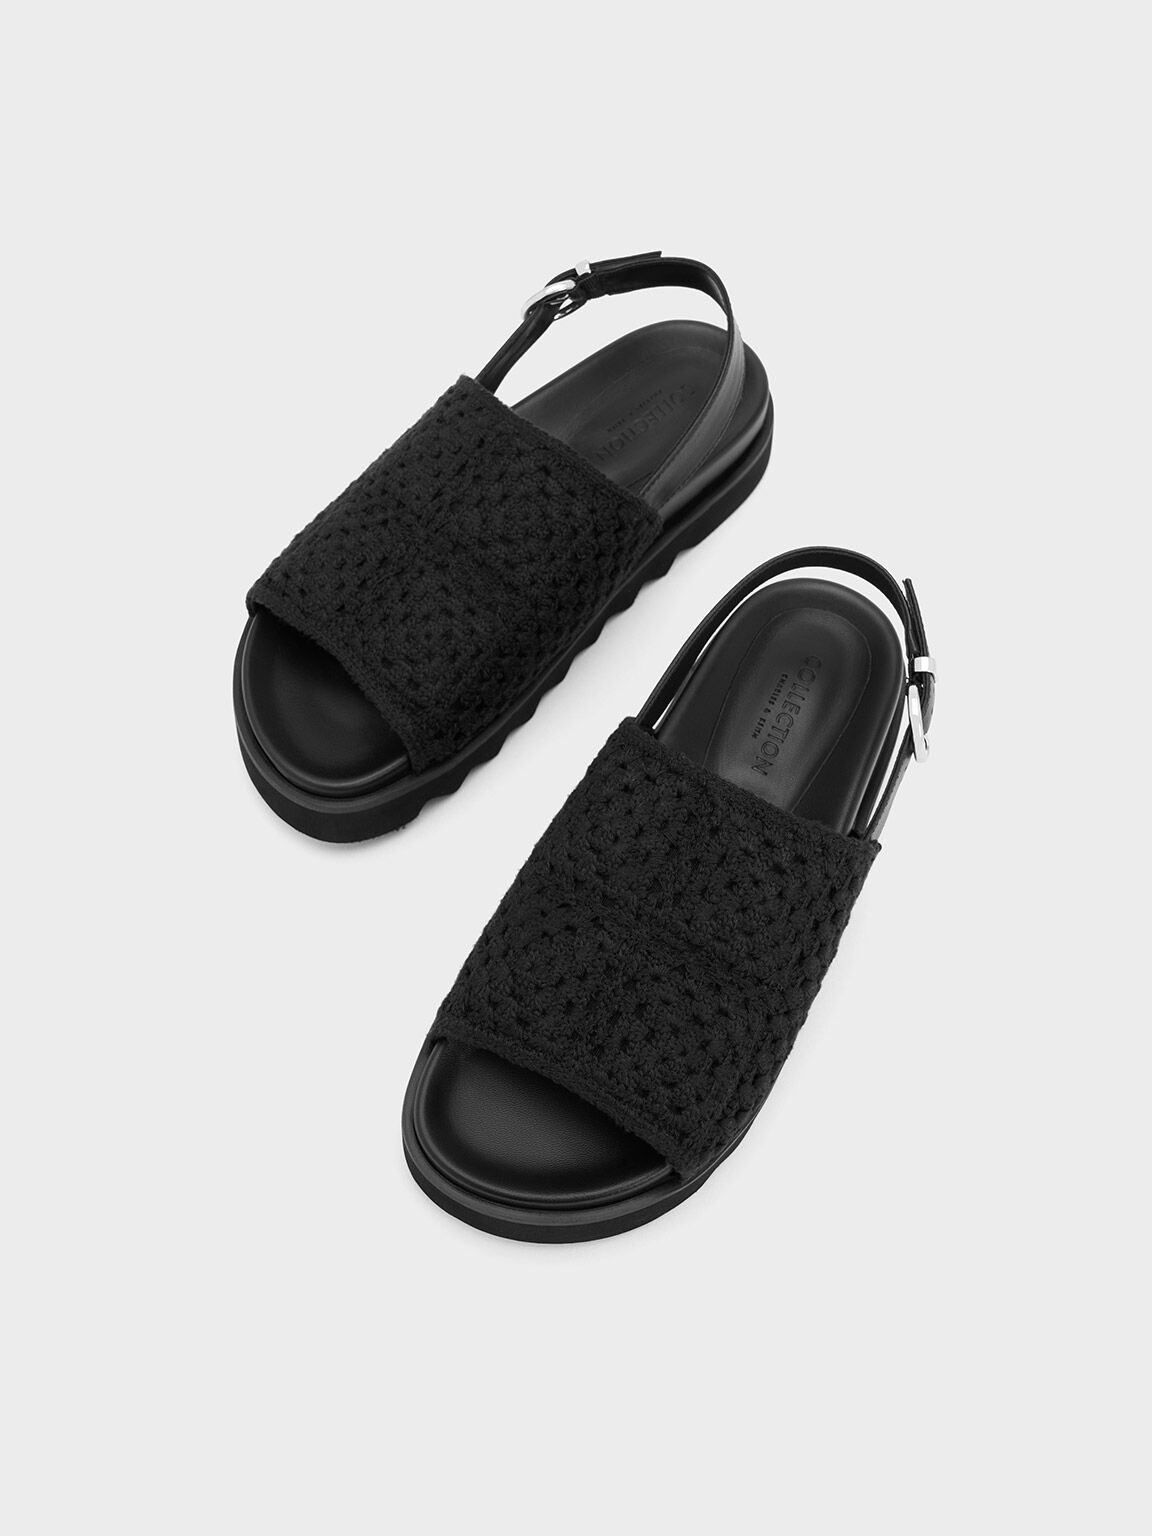 Crochet & Leather Slingback Sandals, Black, hi-res